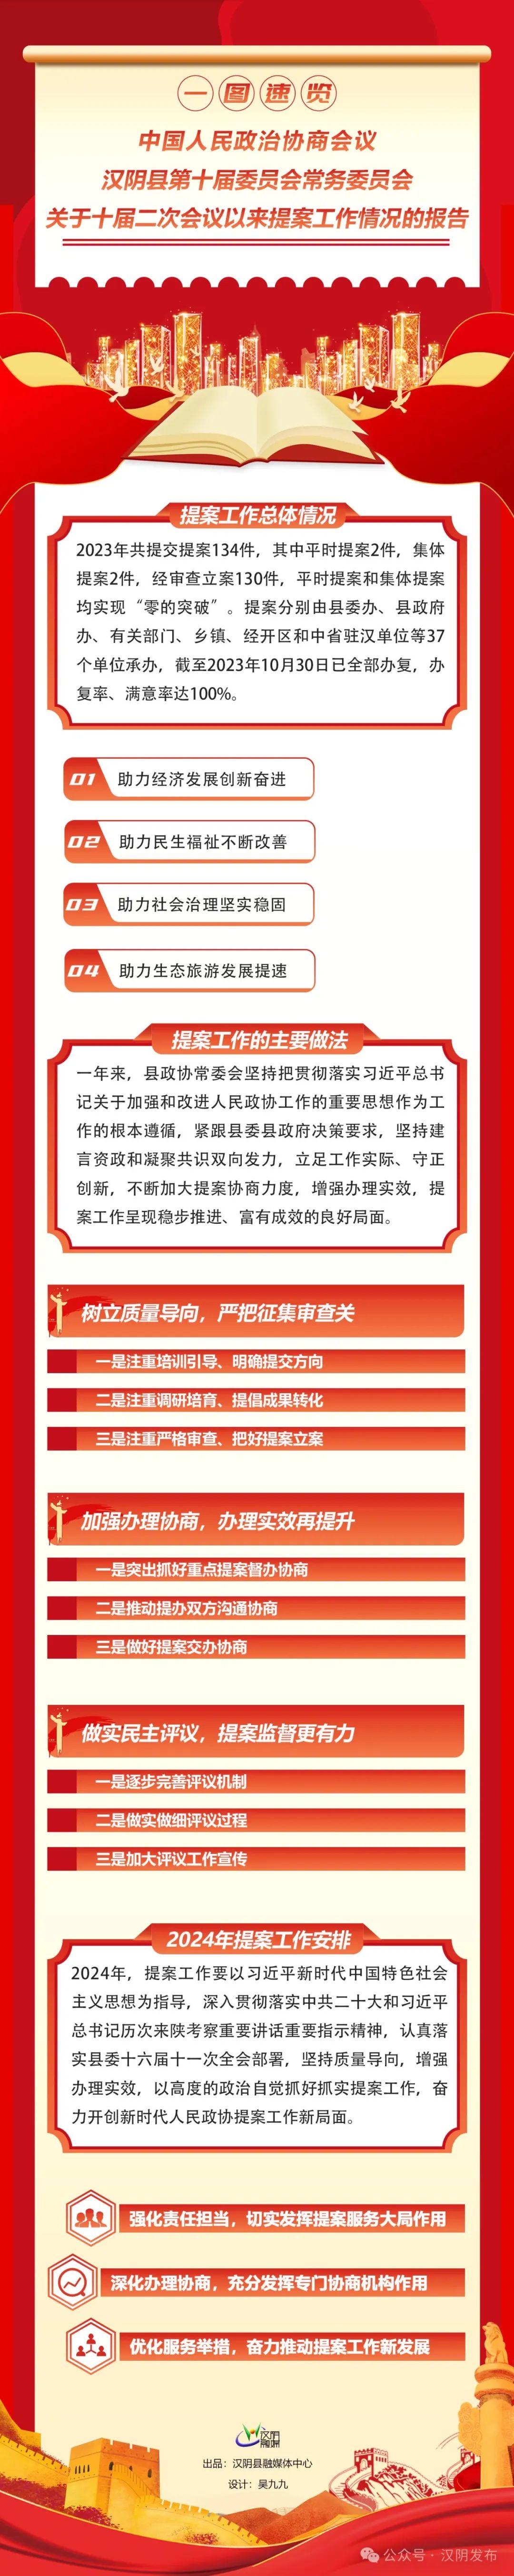 聚焦两会 | 一图速览政协汉阴县第十届委员会常务委员会关于十届二次会议以来提案工作情况的报告